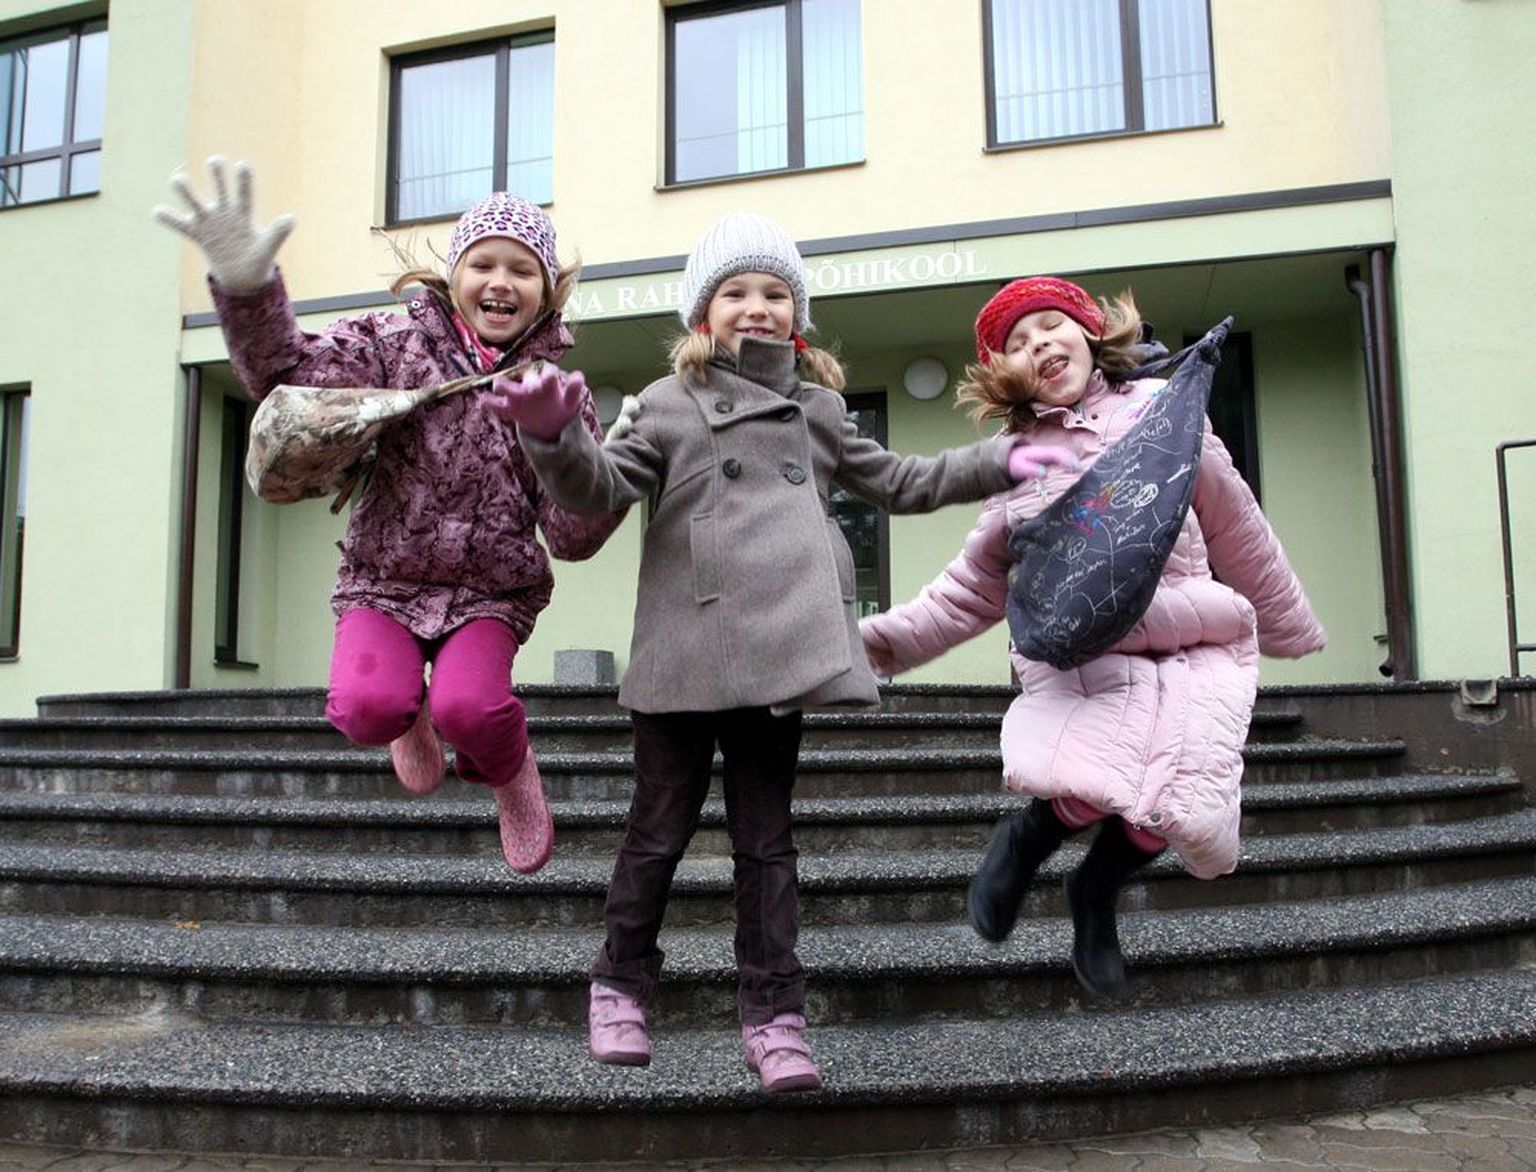 Tallinna Rahumäe põhikooli 2. klassi õpilased Karmen Viinapuu (vasakult), Silvia Torn ning Sofia Schneider rõõmustasid eile koolitrepil algava koolivaheaja üle.